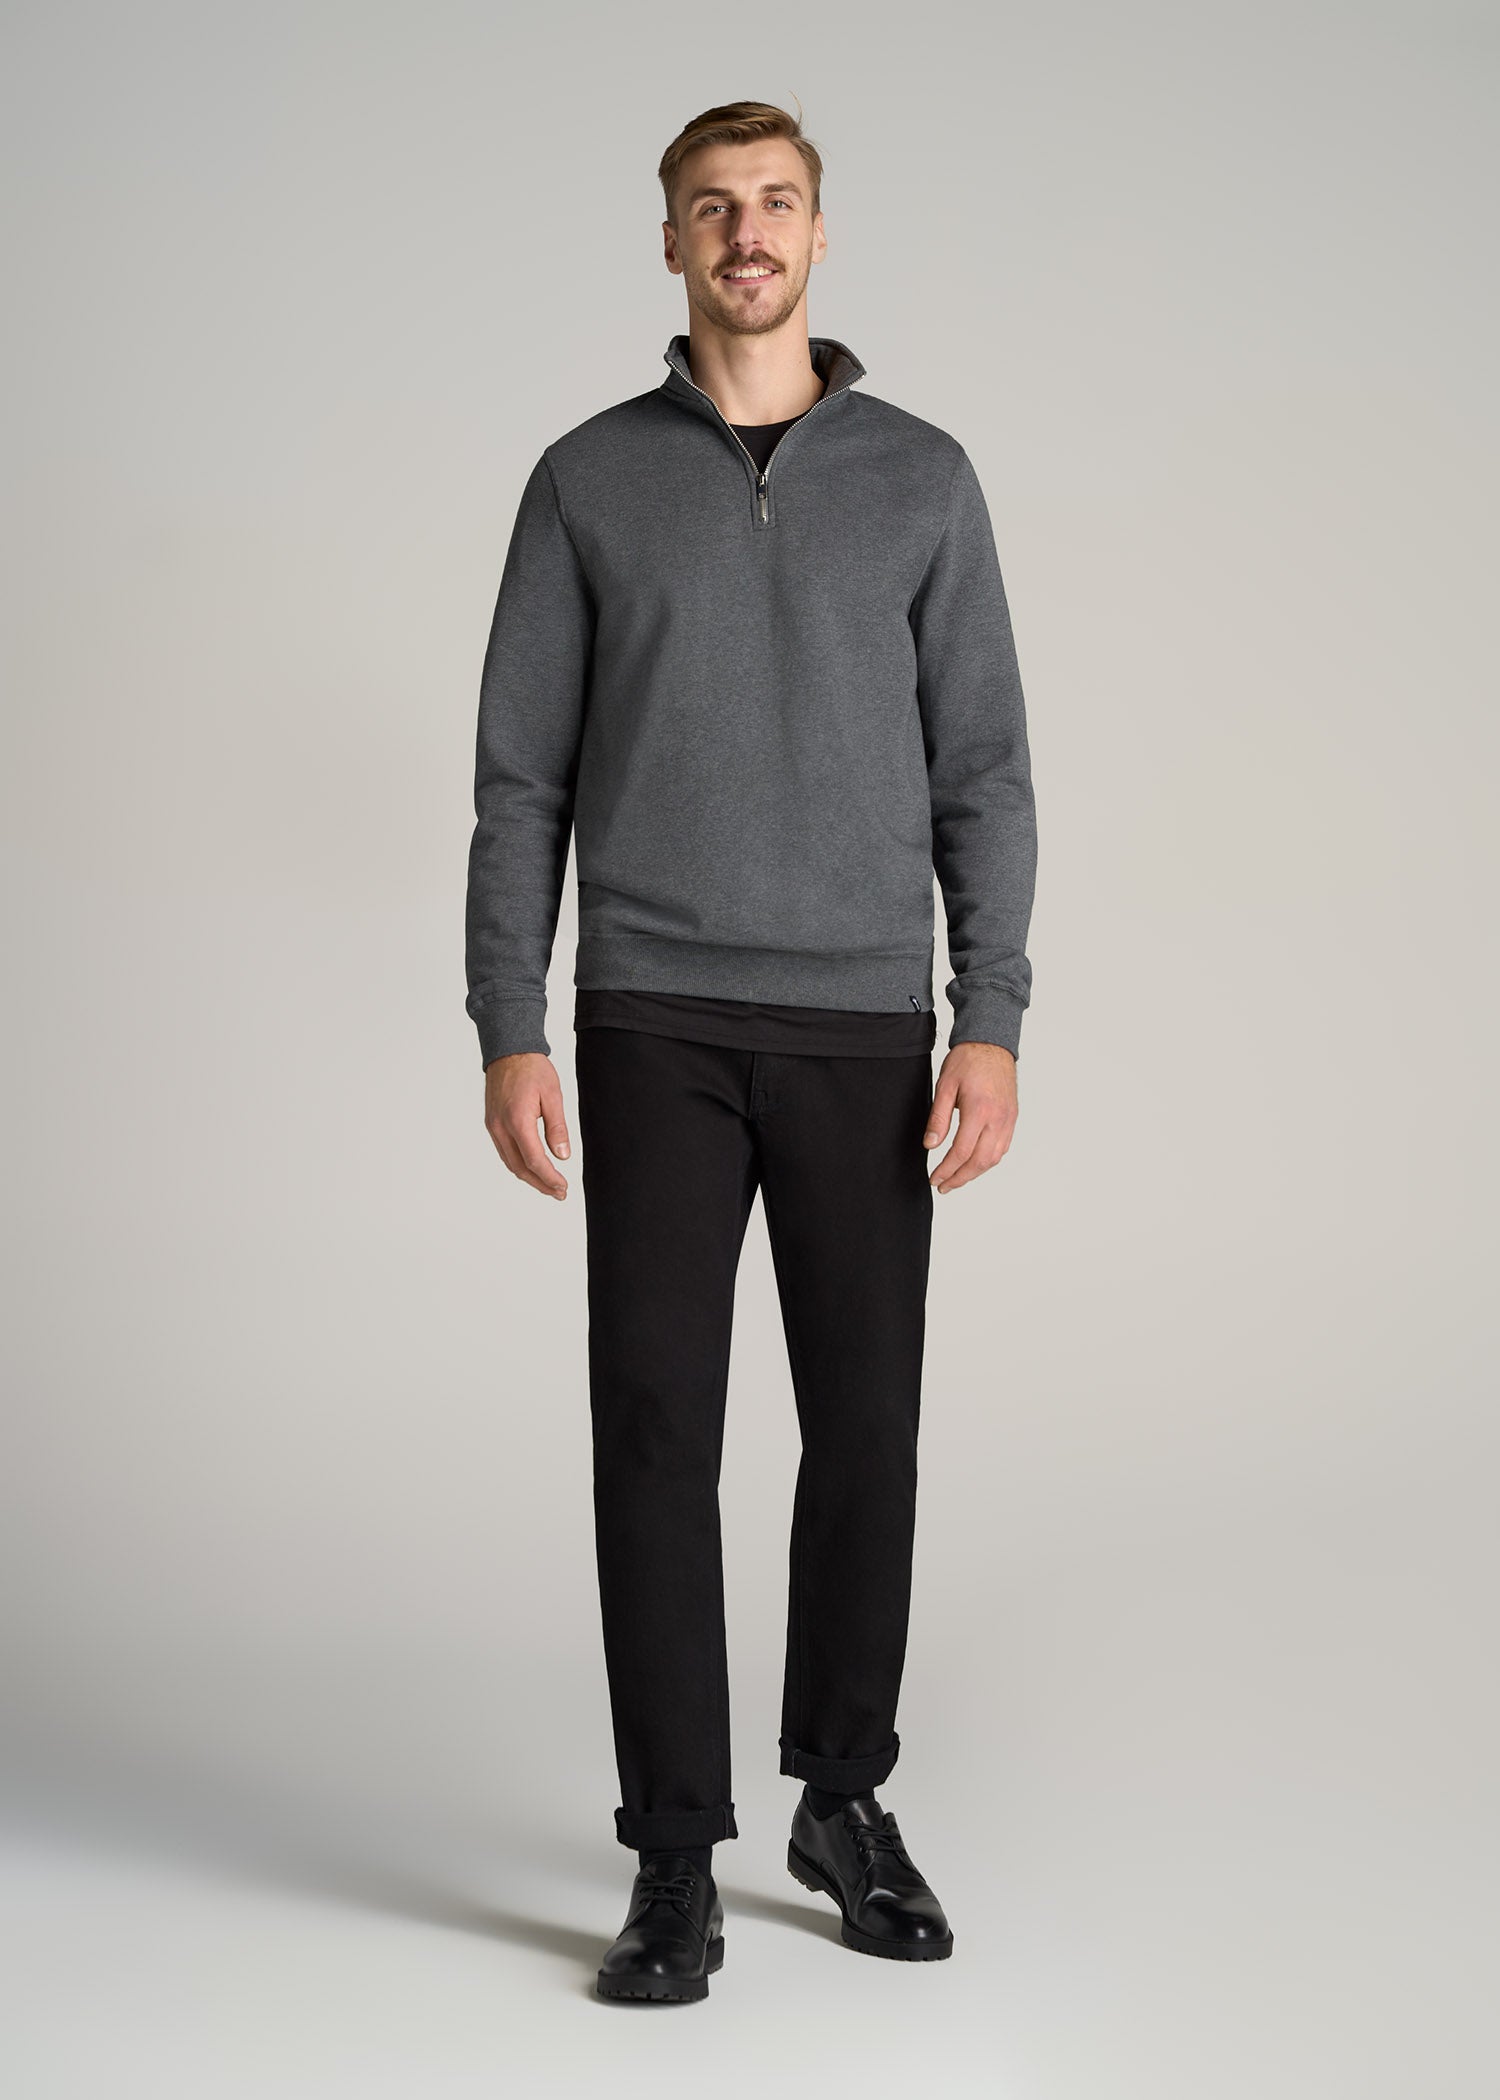 Wearever Fleece Quarter-Zip Tall Men's Sweatshirt in Black